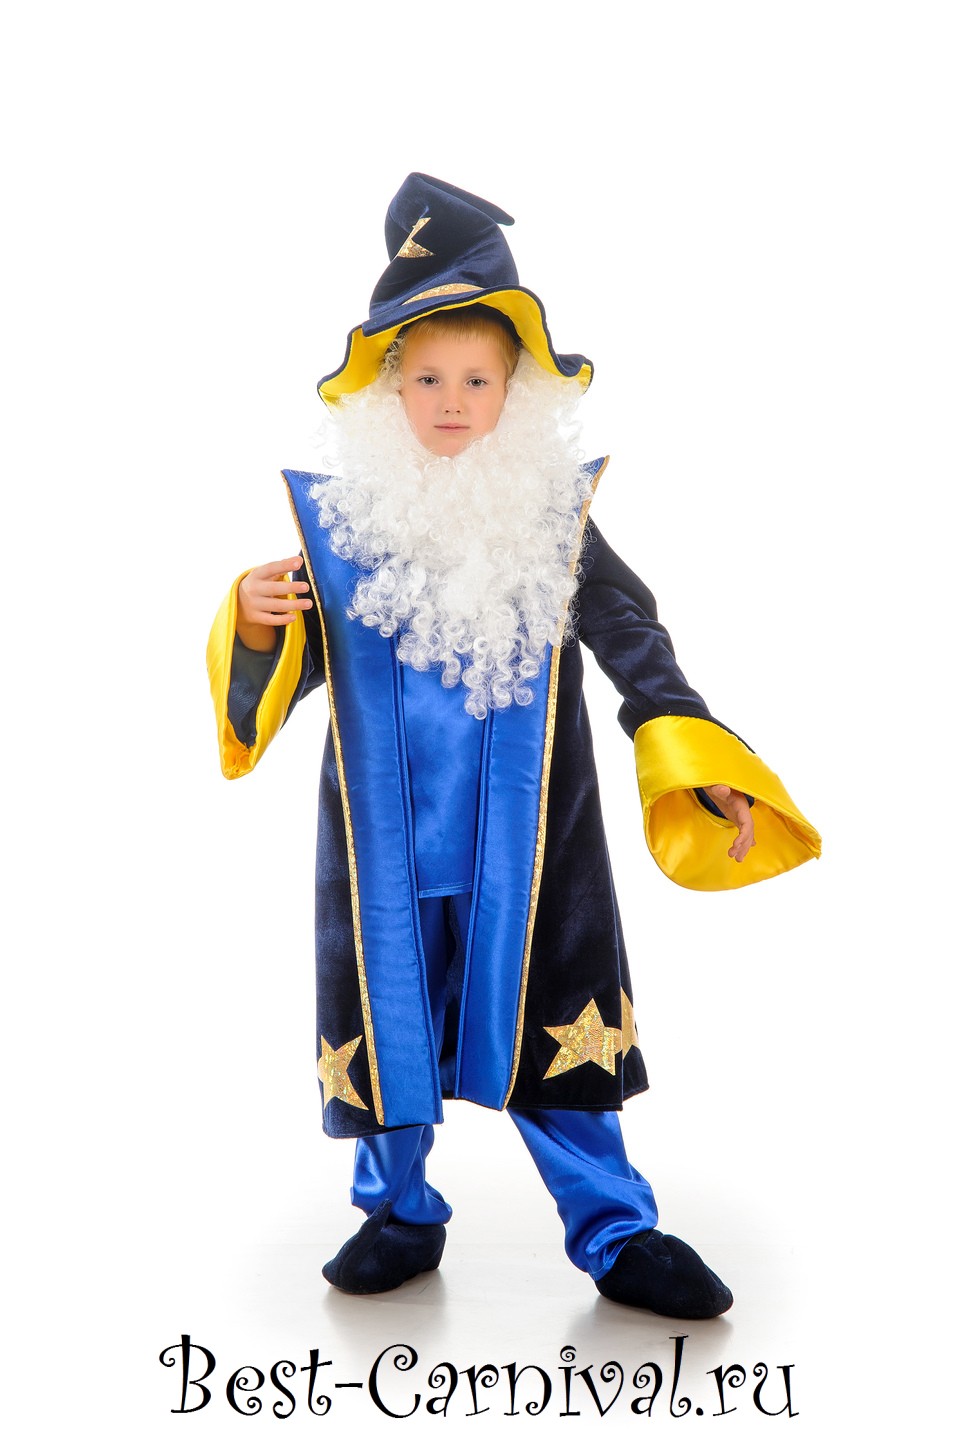 Купить детский костюм гарри поттера: 44 костюма от 7 производителей